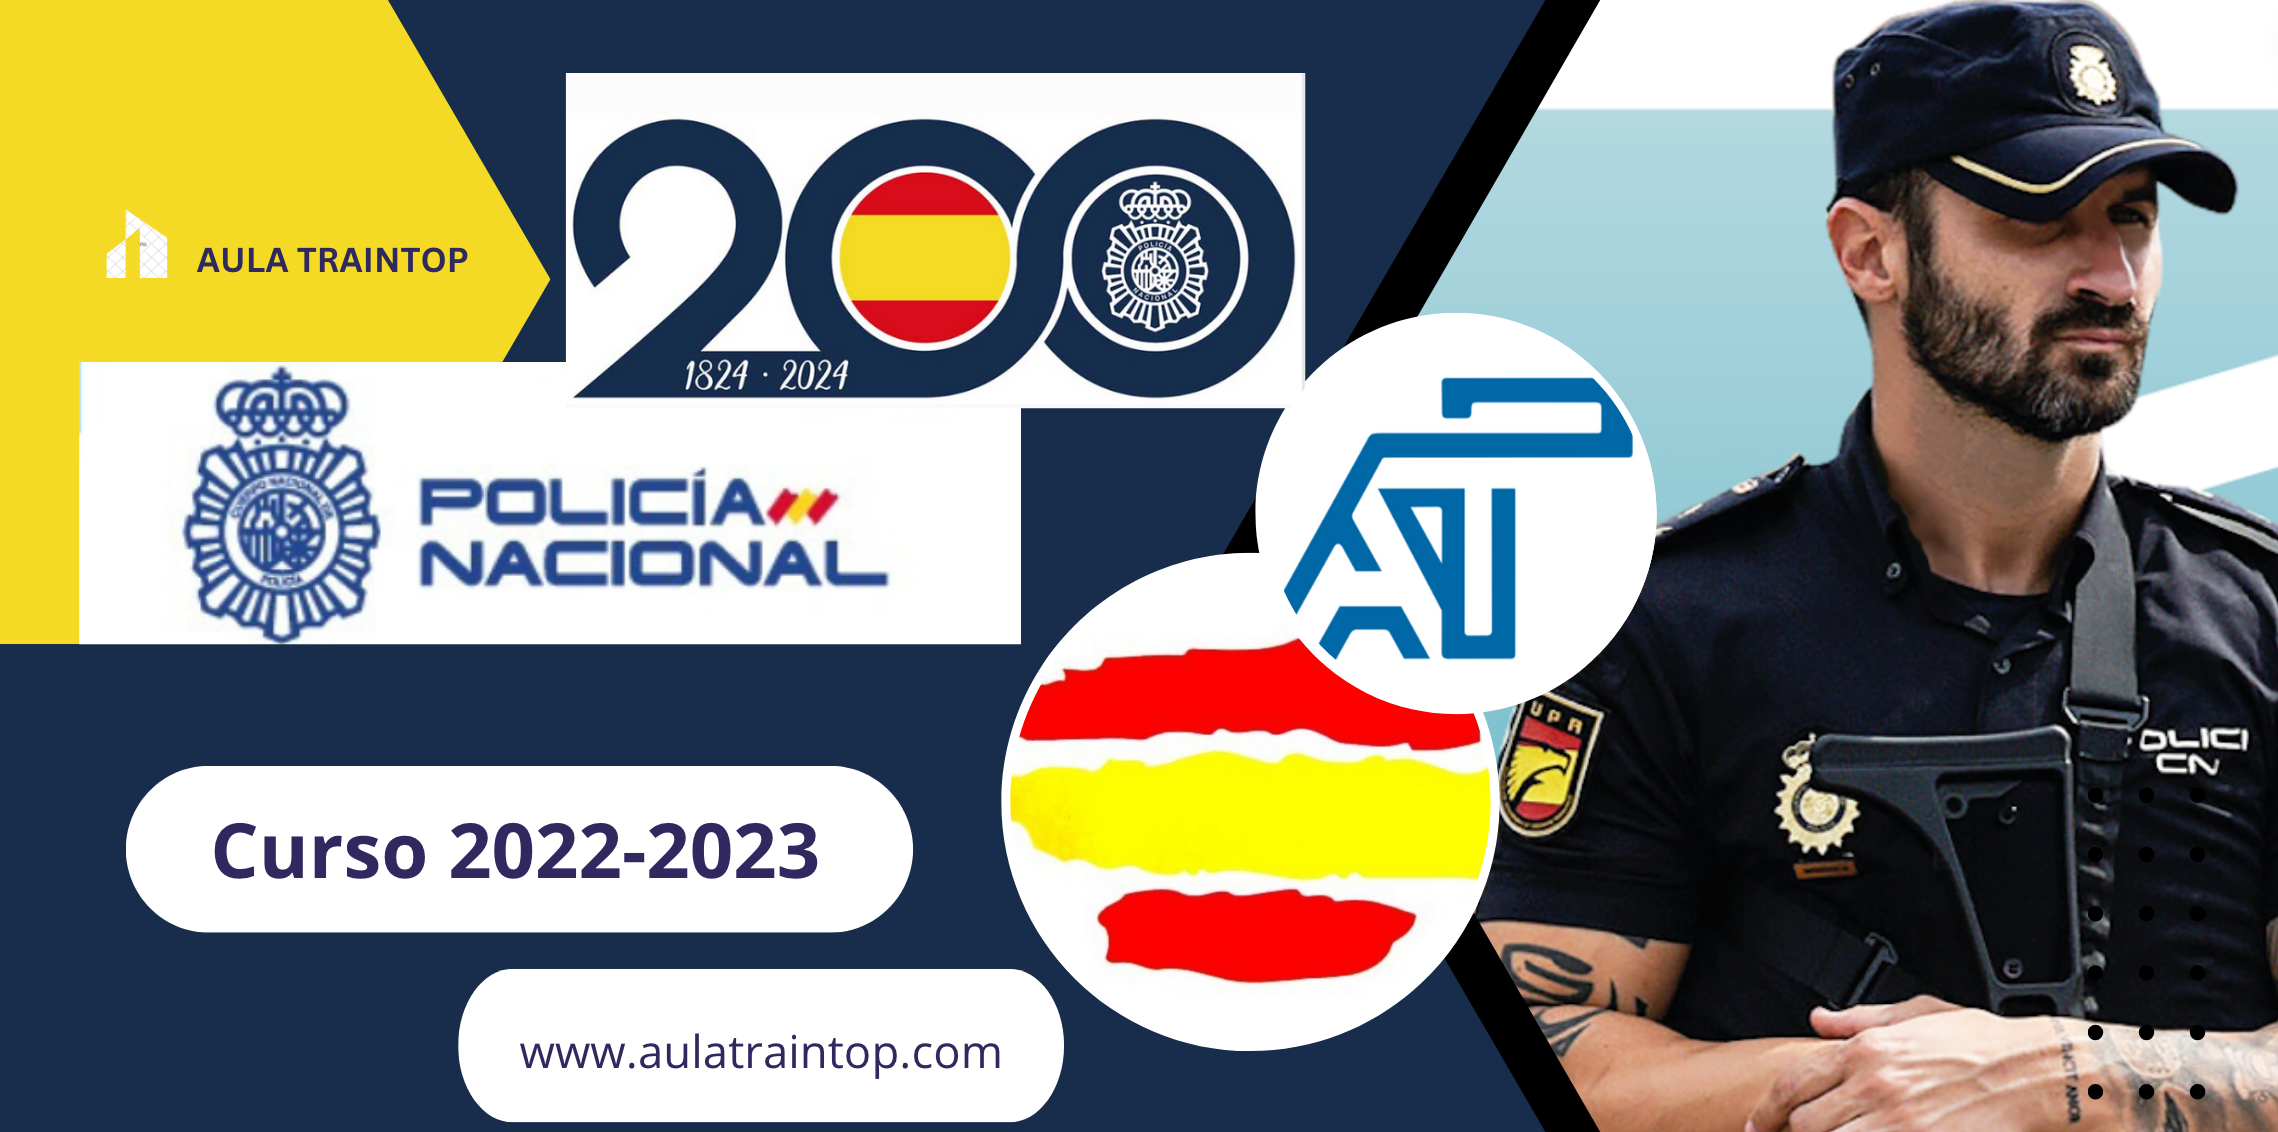 Policía Nacional 2022/2023